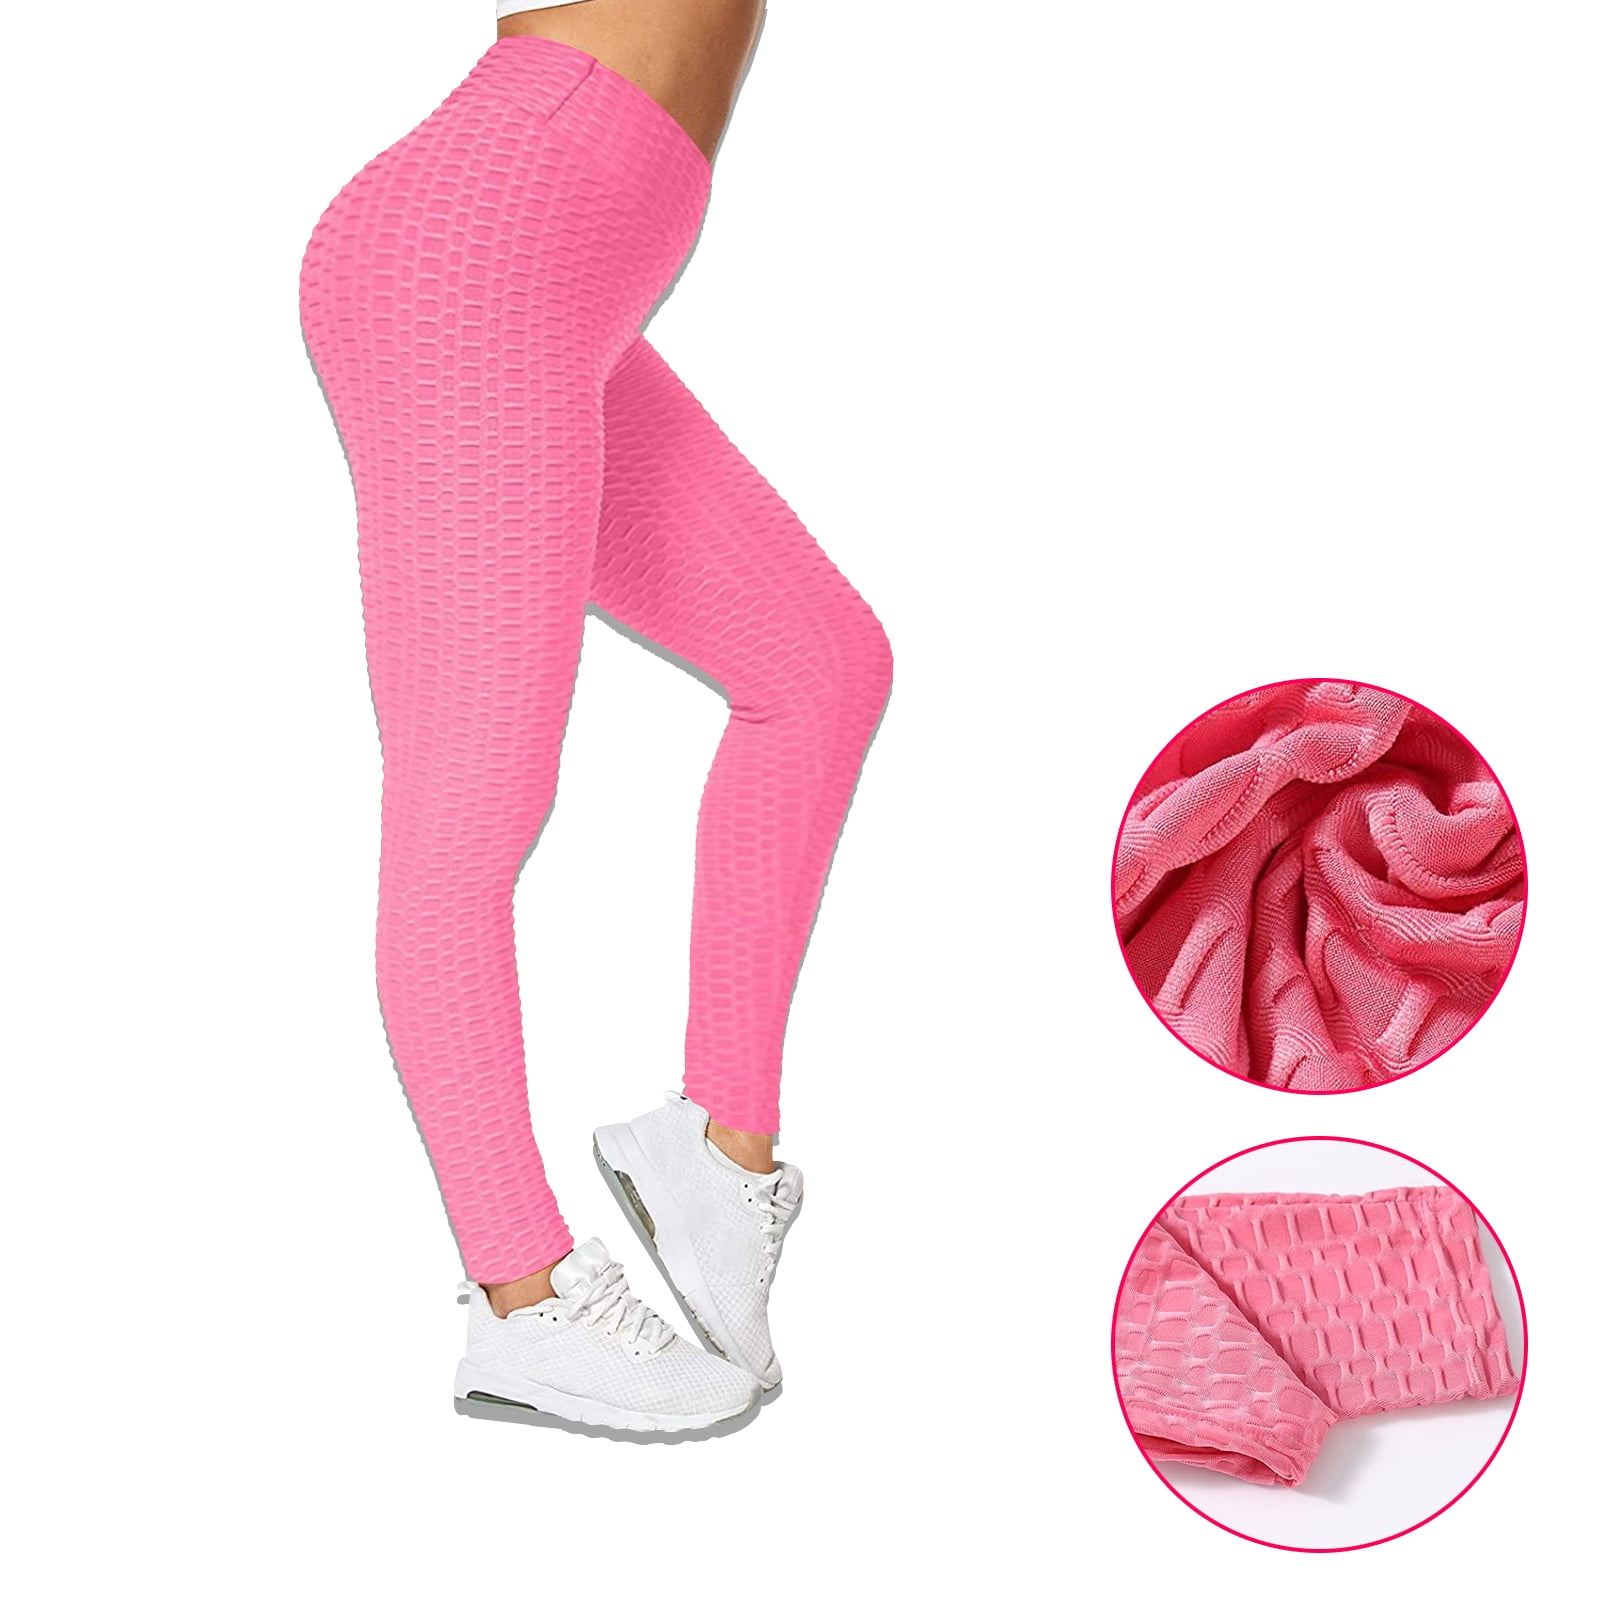 TikTok leggings MEDIUM pink scrunch butt ankle length brand new